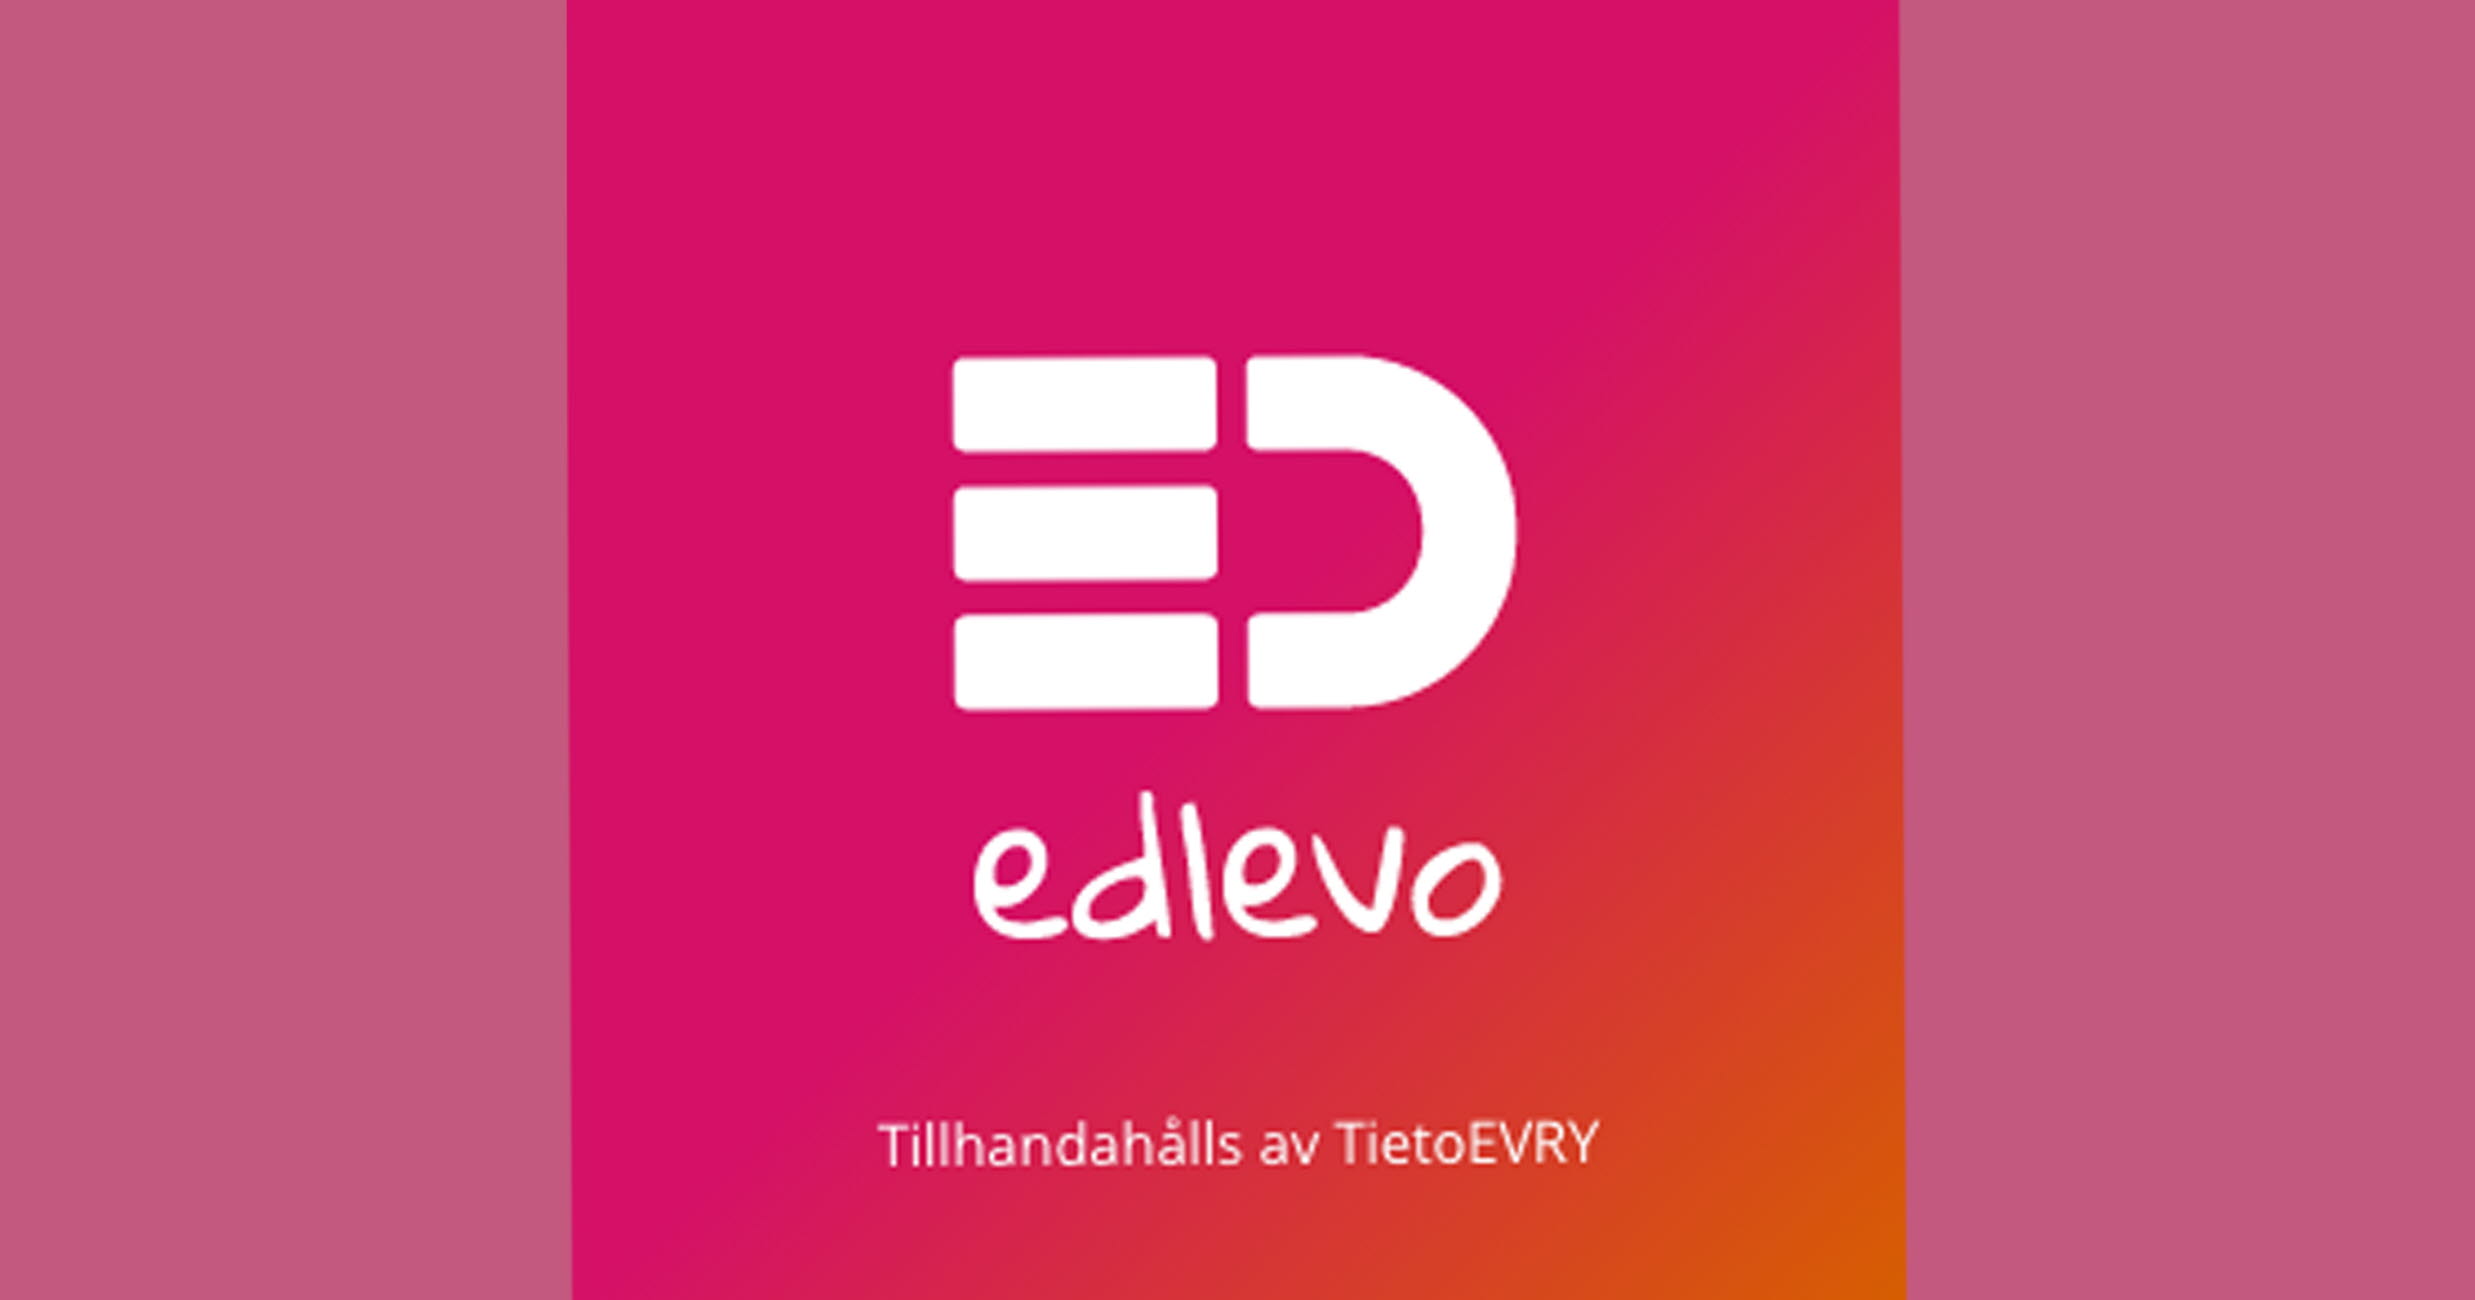 Logotyp edlevo